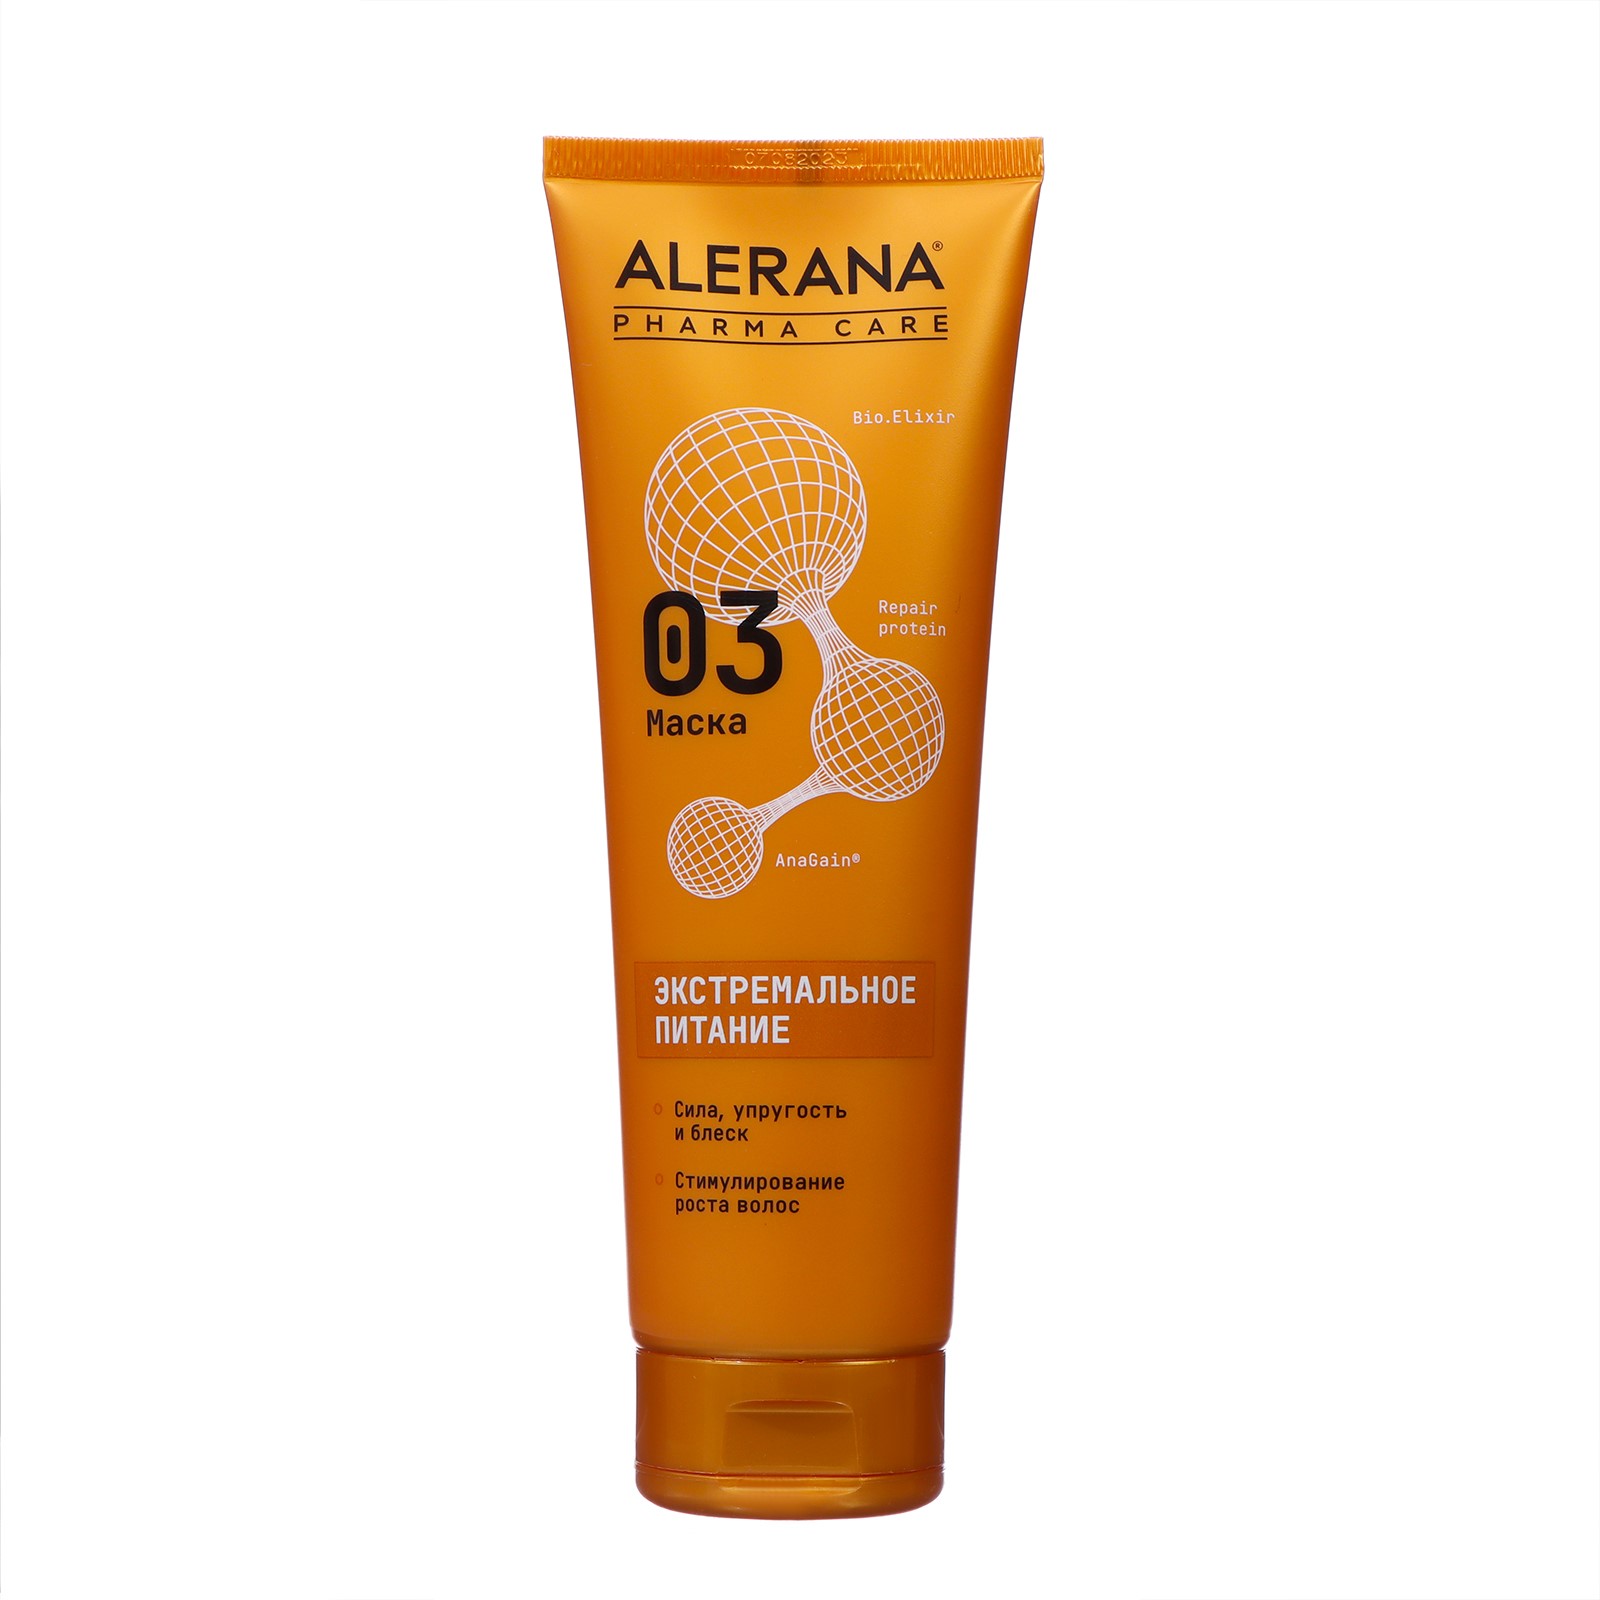 Маска для волос Alerana Pharma care Формула экстремального питания, 260 мл маска увлажняющая для нормальных и сухих волос sp hydrate mask 200 мл